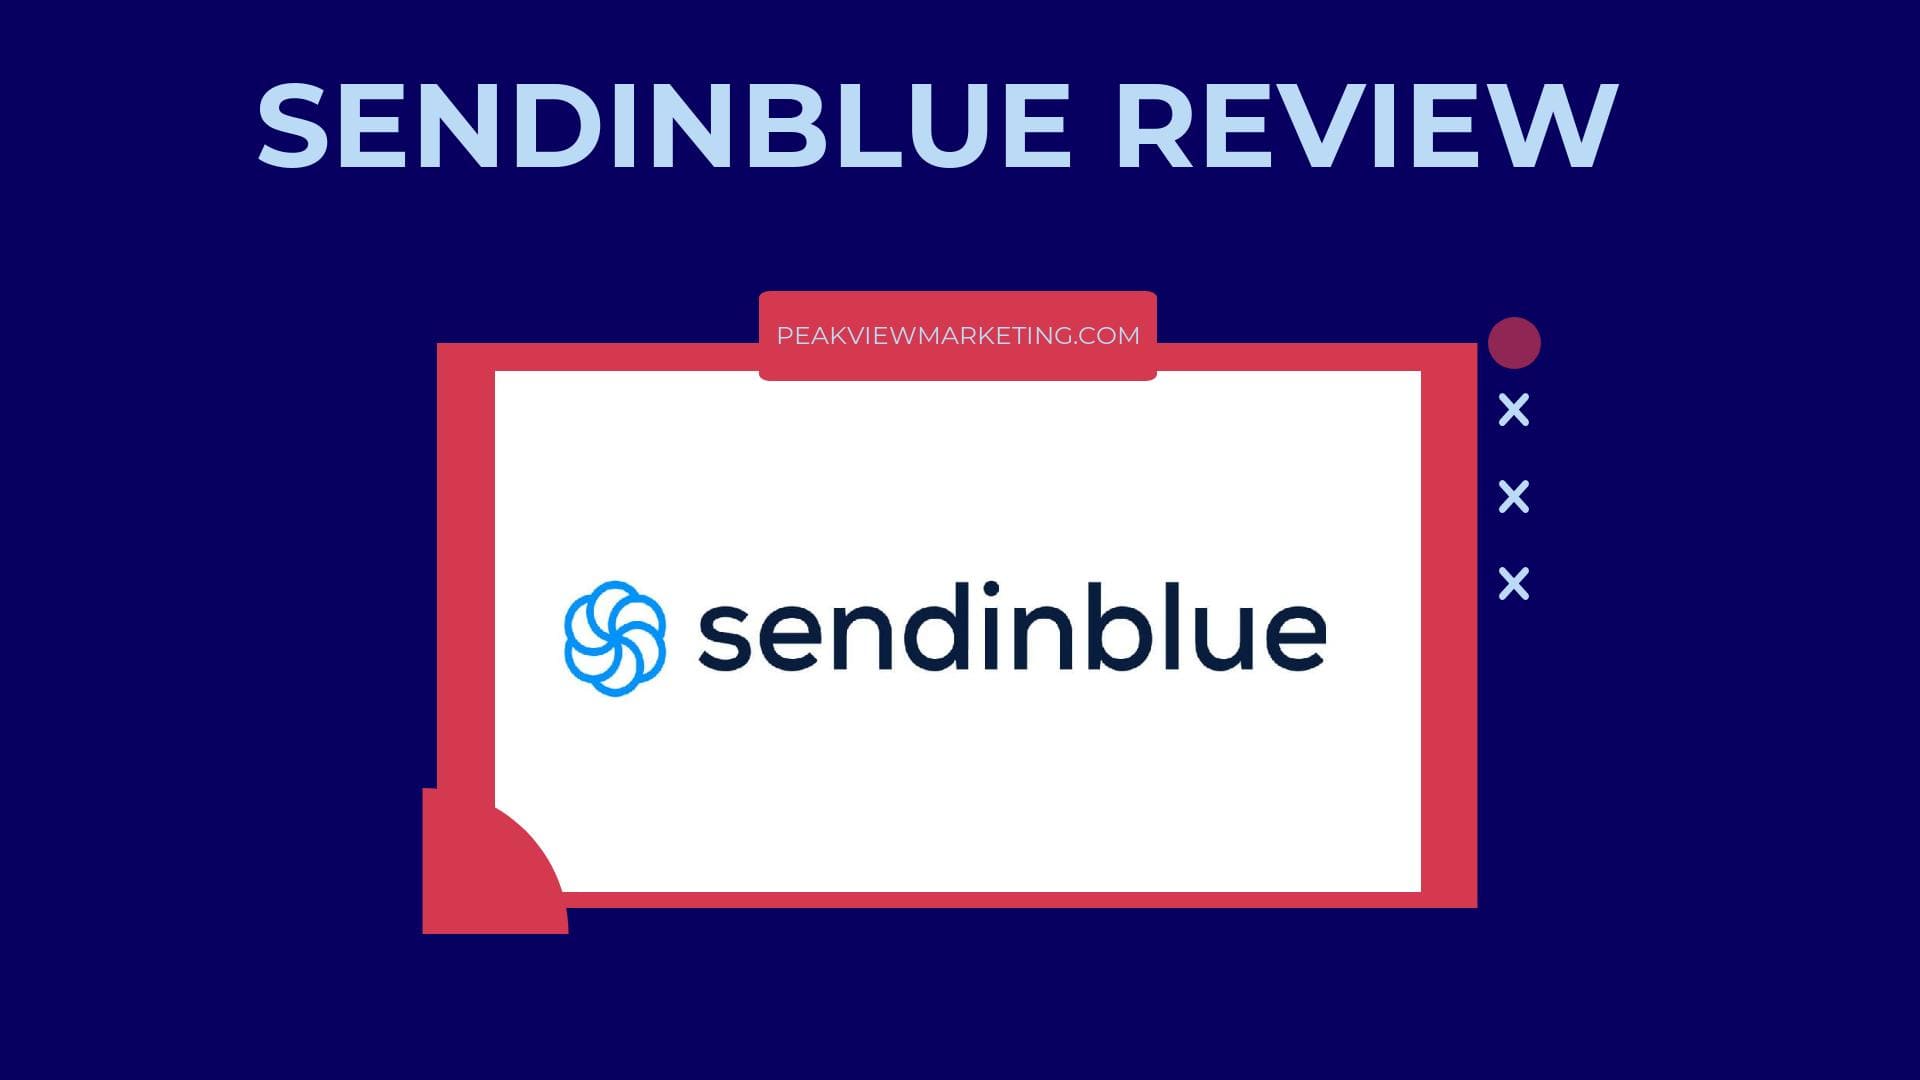 SendinBlue Review Image